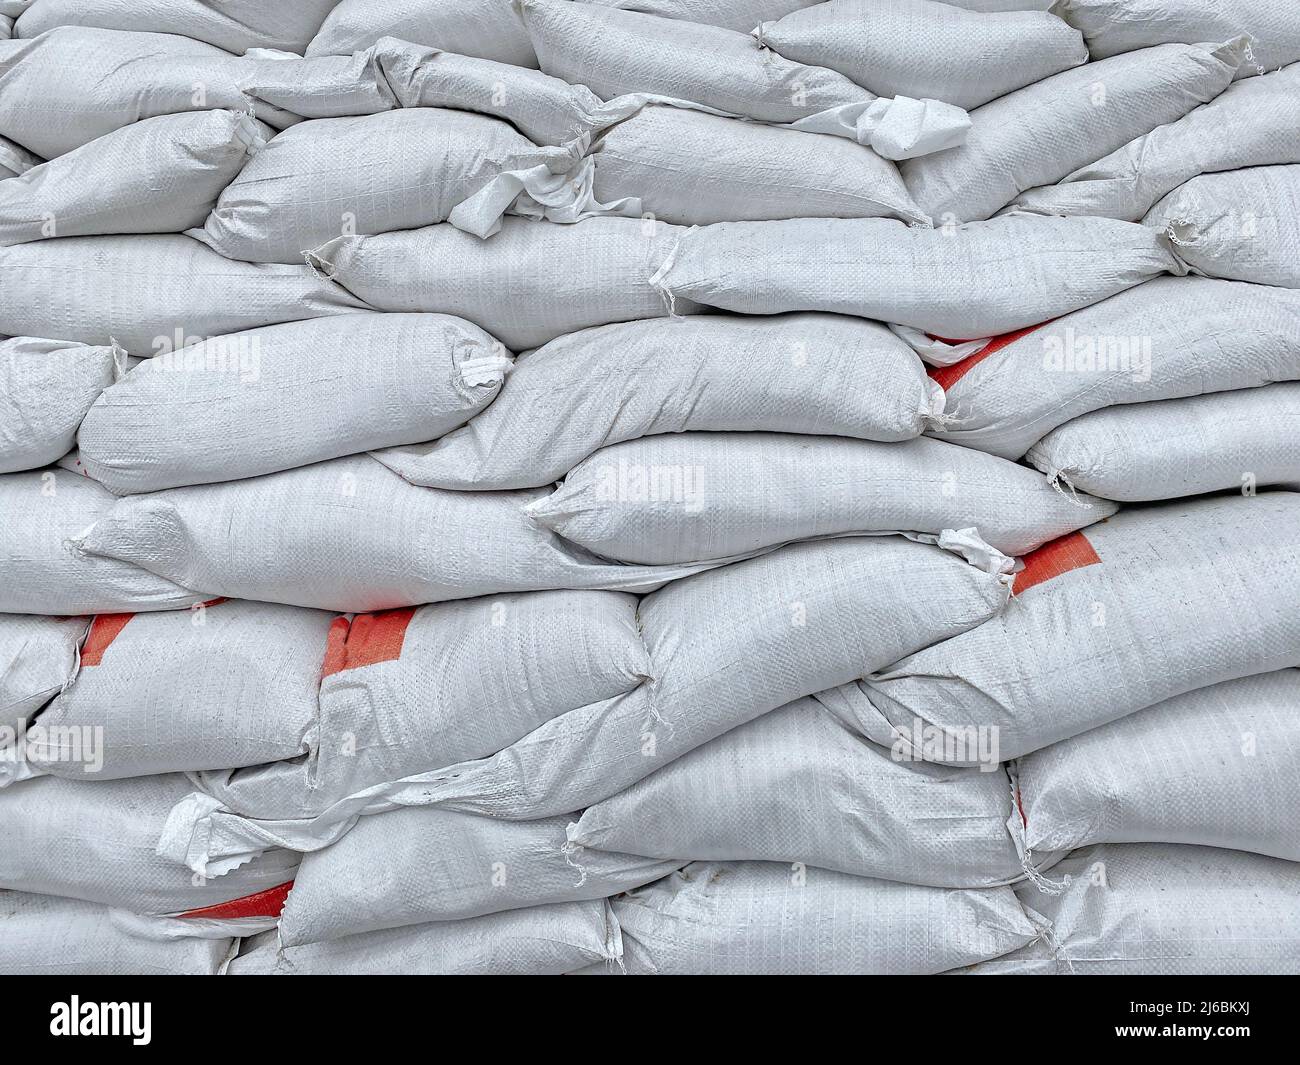 Haufen von Sandsäcken, die während des Kriegskonflikts als Schutz verwendet wurden Stockfoto